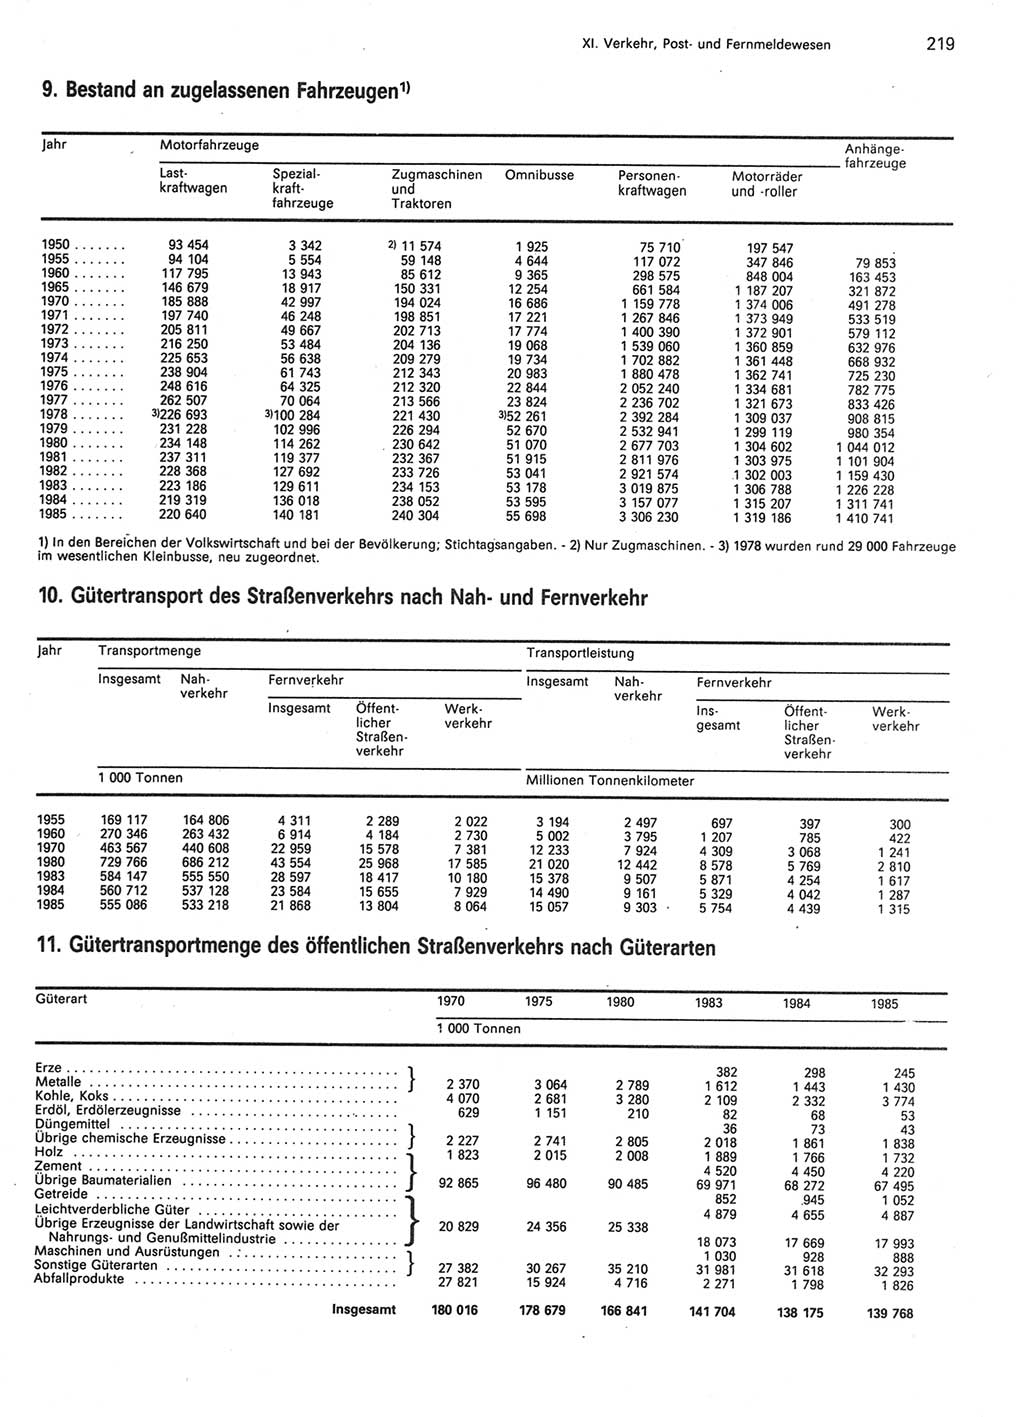 Statistisches Jahrbuch der Deutschen Demokratischen Republik (DDR) 1986, Seite 219 (Stat. Jb. DDR 1986, S. 219)